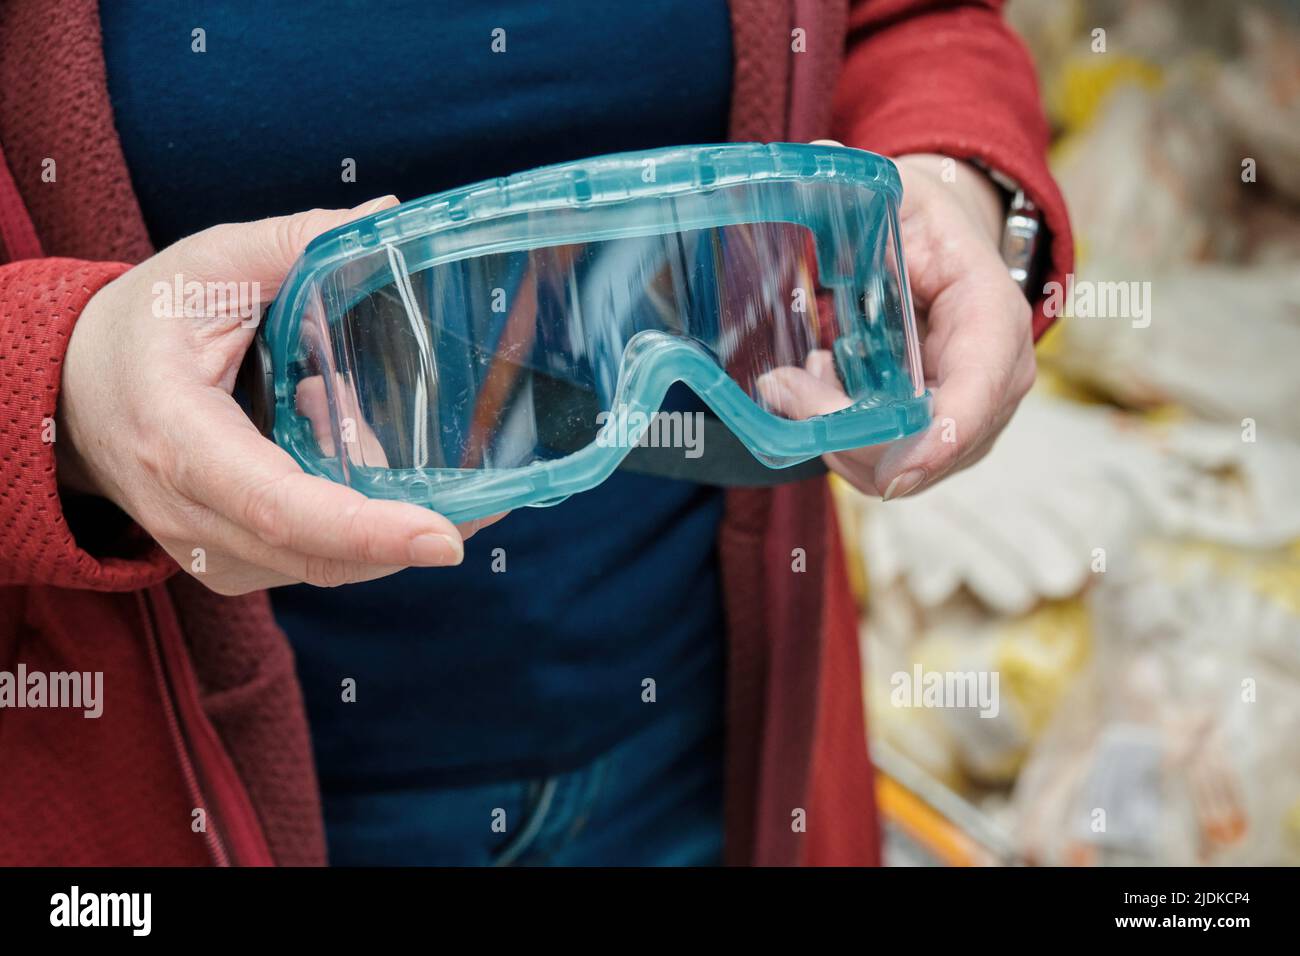 Femme dans le magasin de matériaux de construction choisit pour acheter des lunettes de protection en plastique Banque D'Images